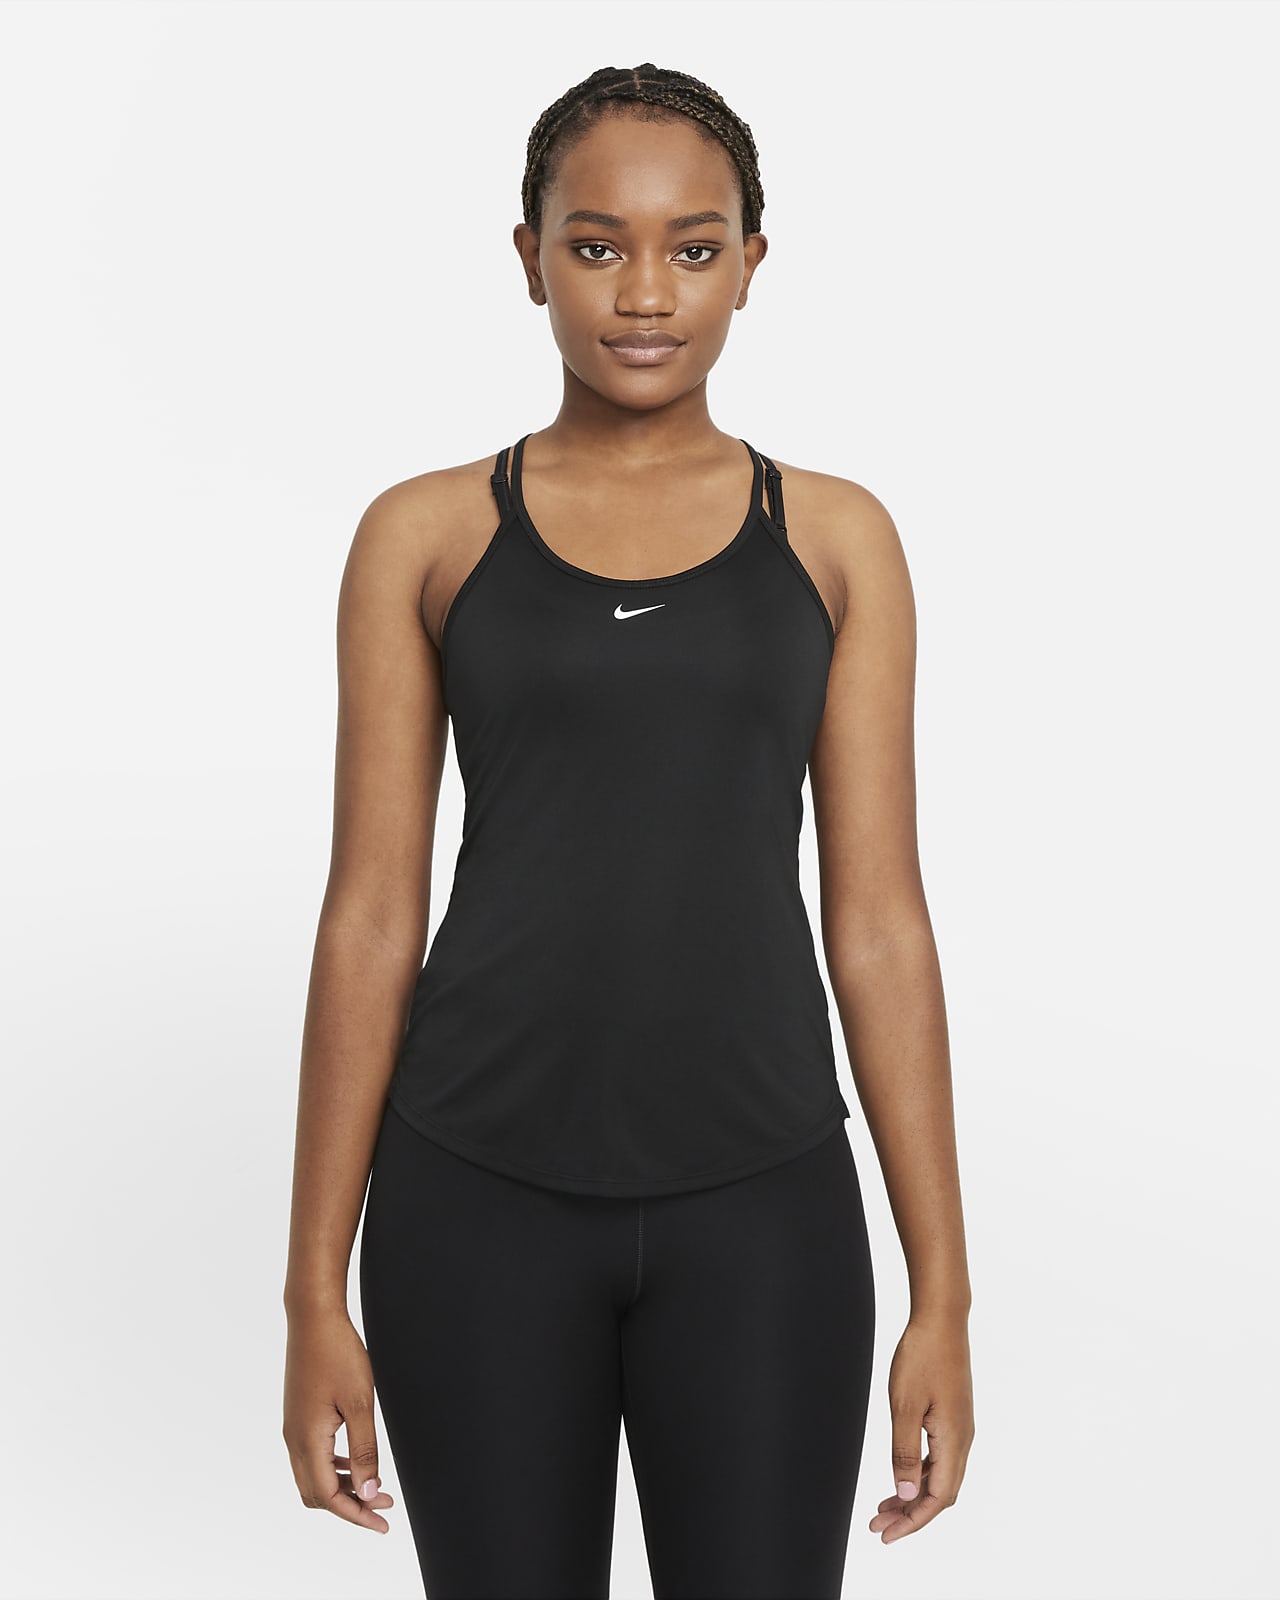 Camiseta Nike Yoga Dri-FIT Feminina - Faz a Boa!